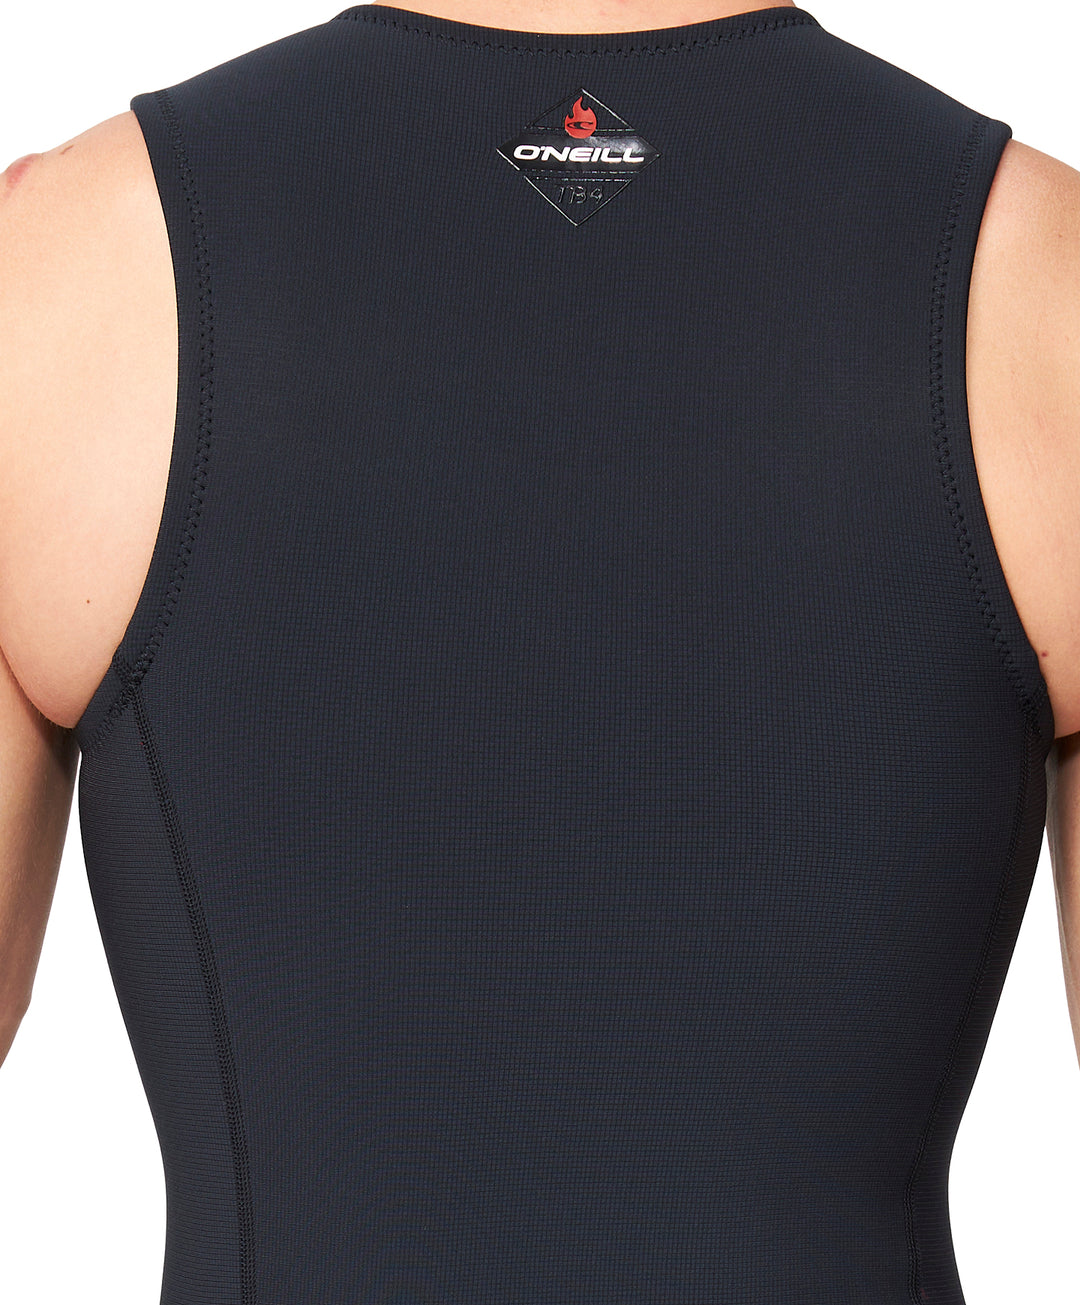 HyperFire 1mm Sleeveless Wetsuit Vest - Black